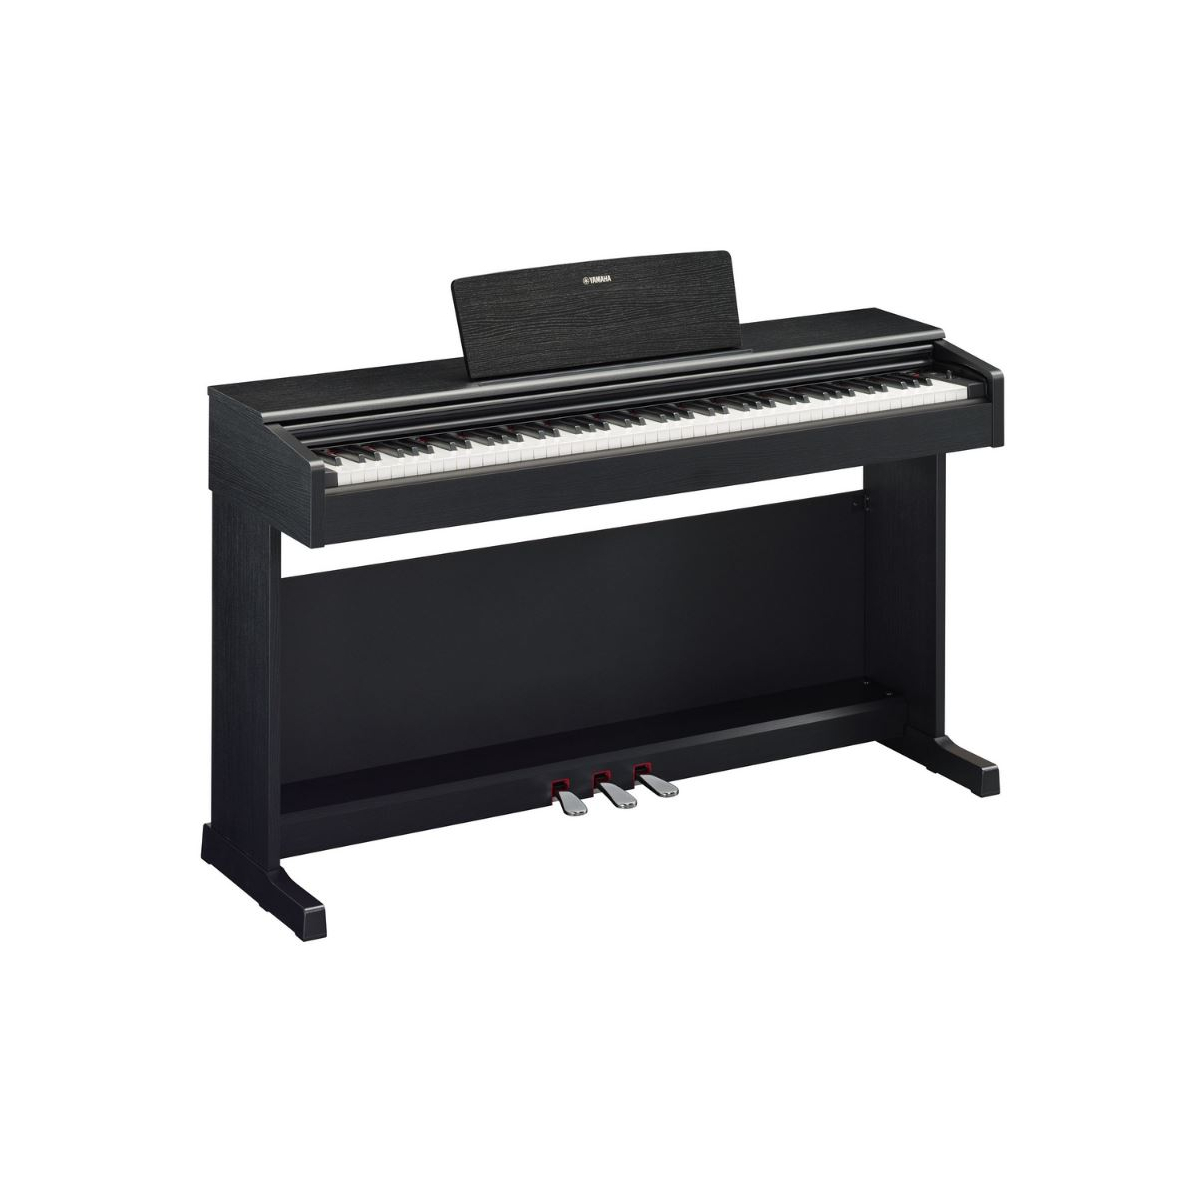 Pianos numériques meubles - Yamaha - YDP-145 (NOIR)